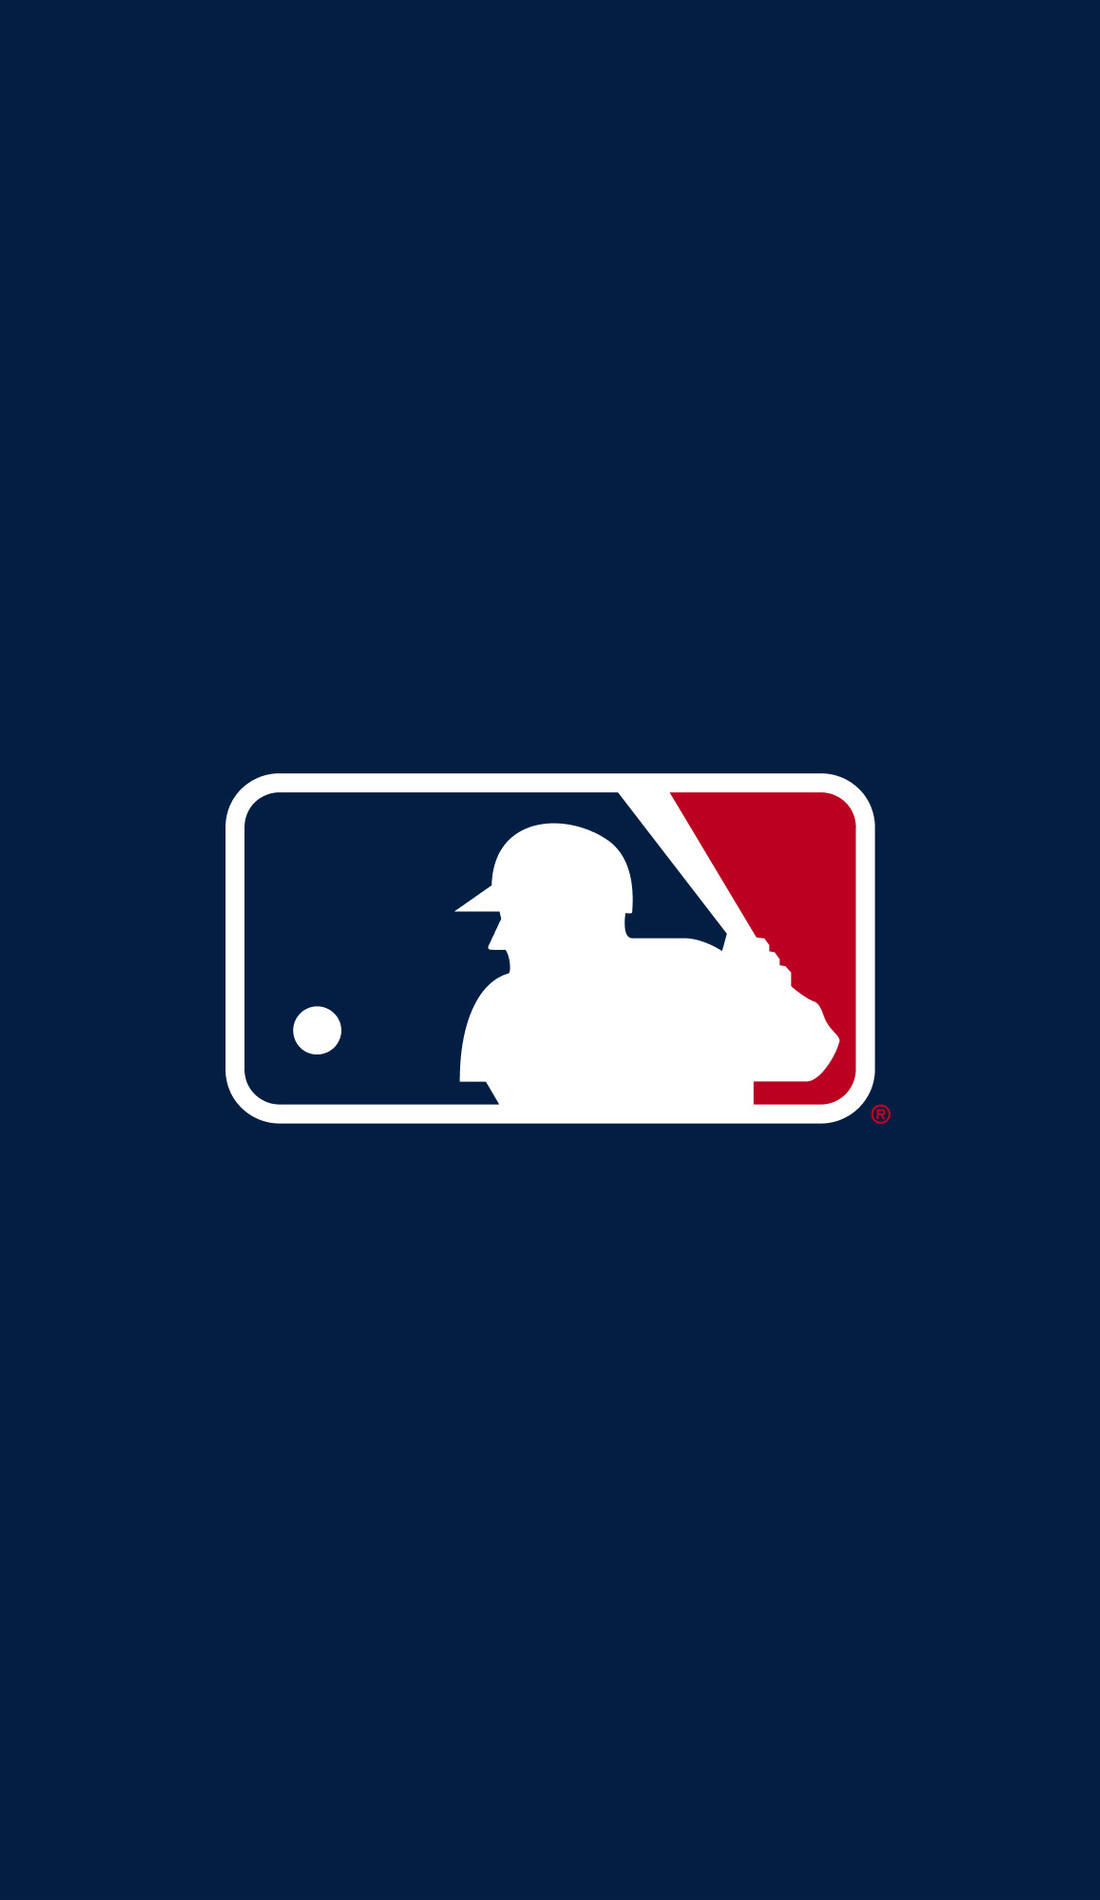 2016 MLB postseason bracket